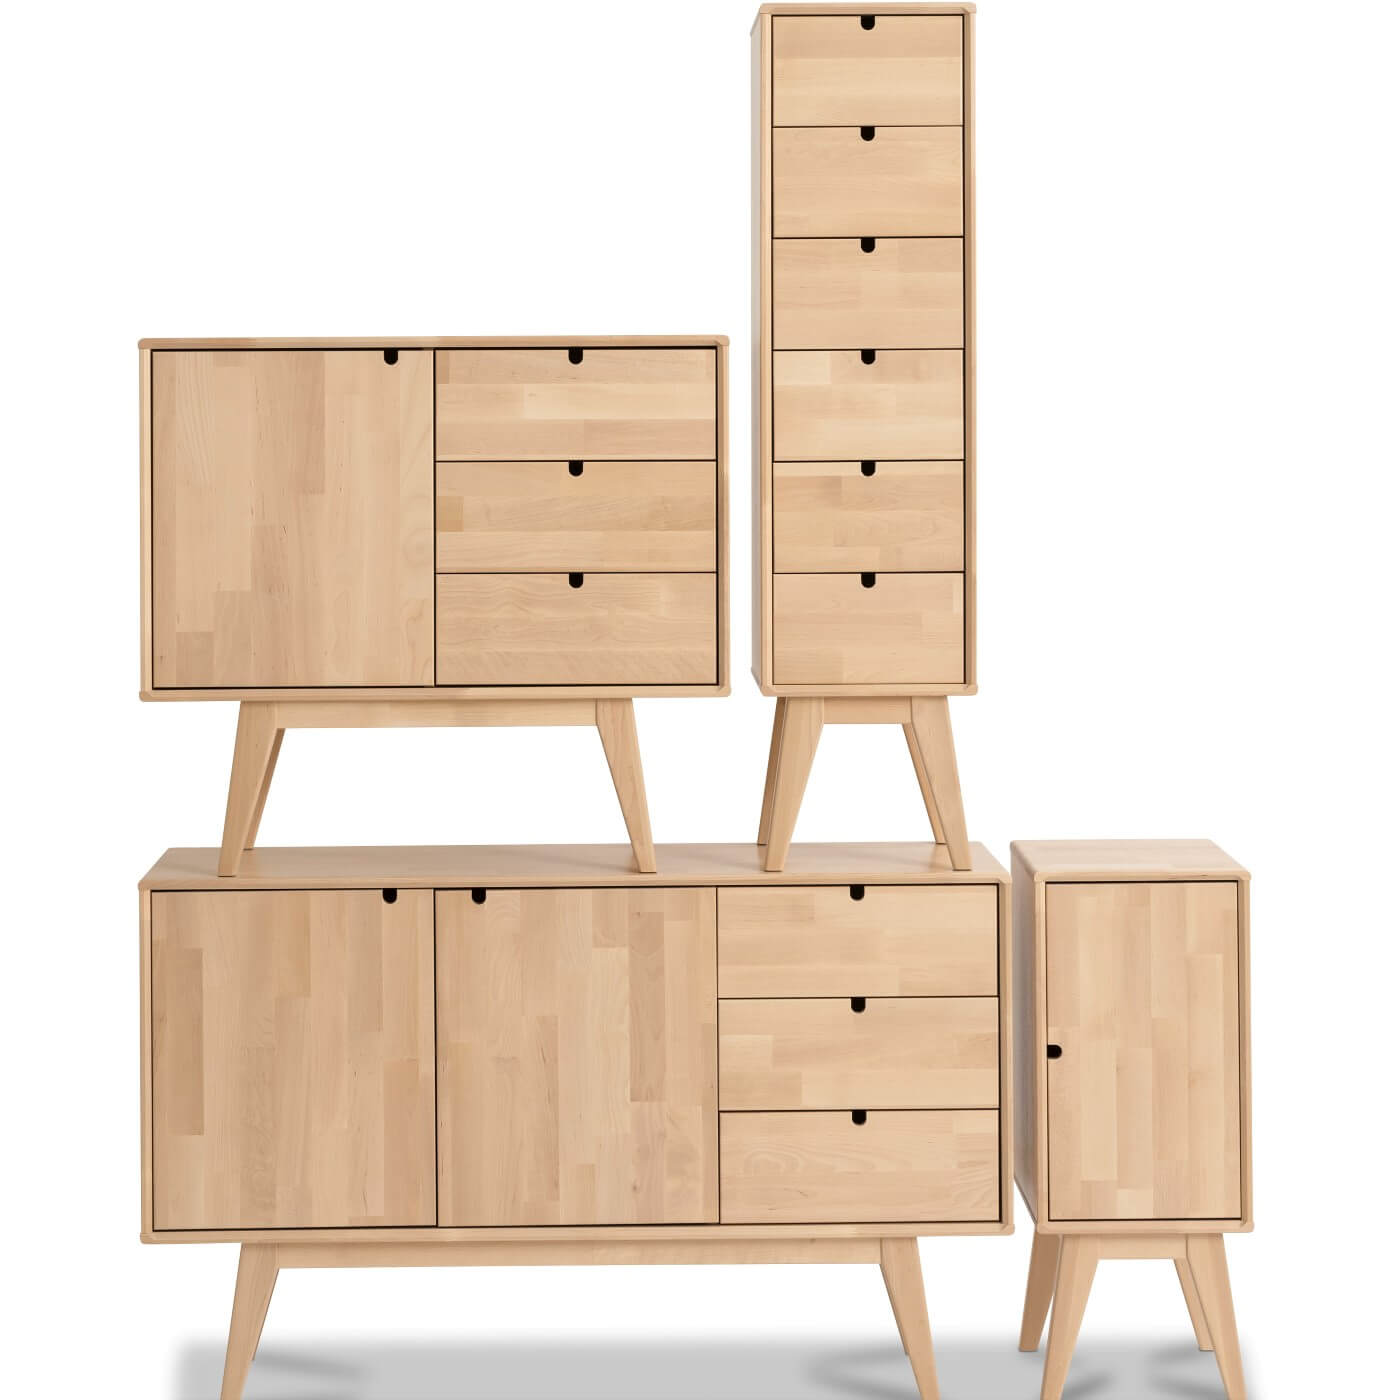 Szafki drewniane skandynawskie NOTTE. Aranżacja 4 drewnianych nowoczesnych szafek na wysokich nóżkach z kolekcji NOTTE